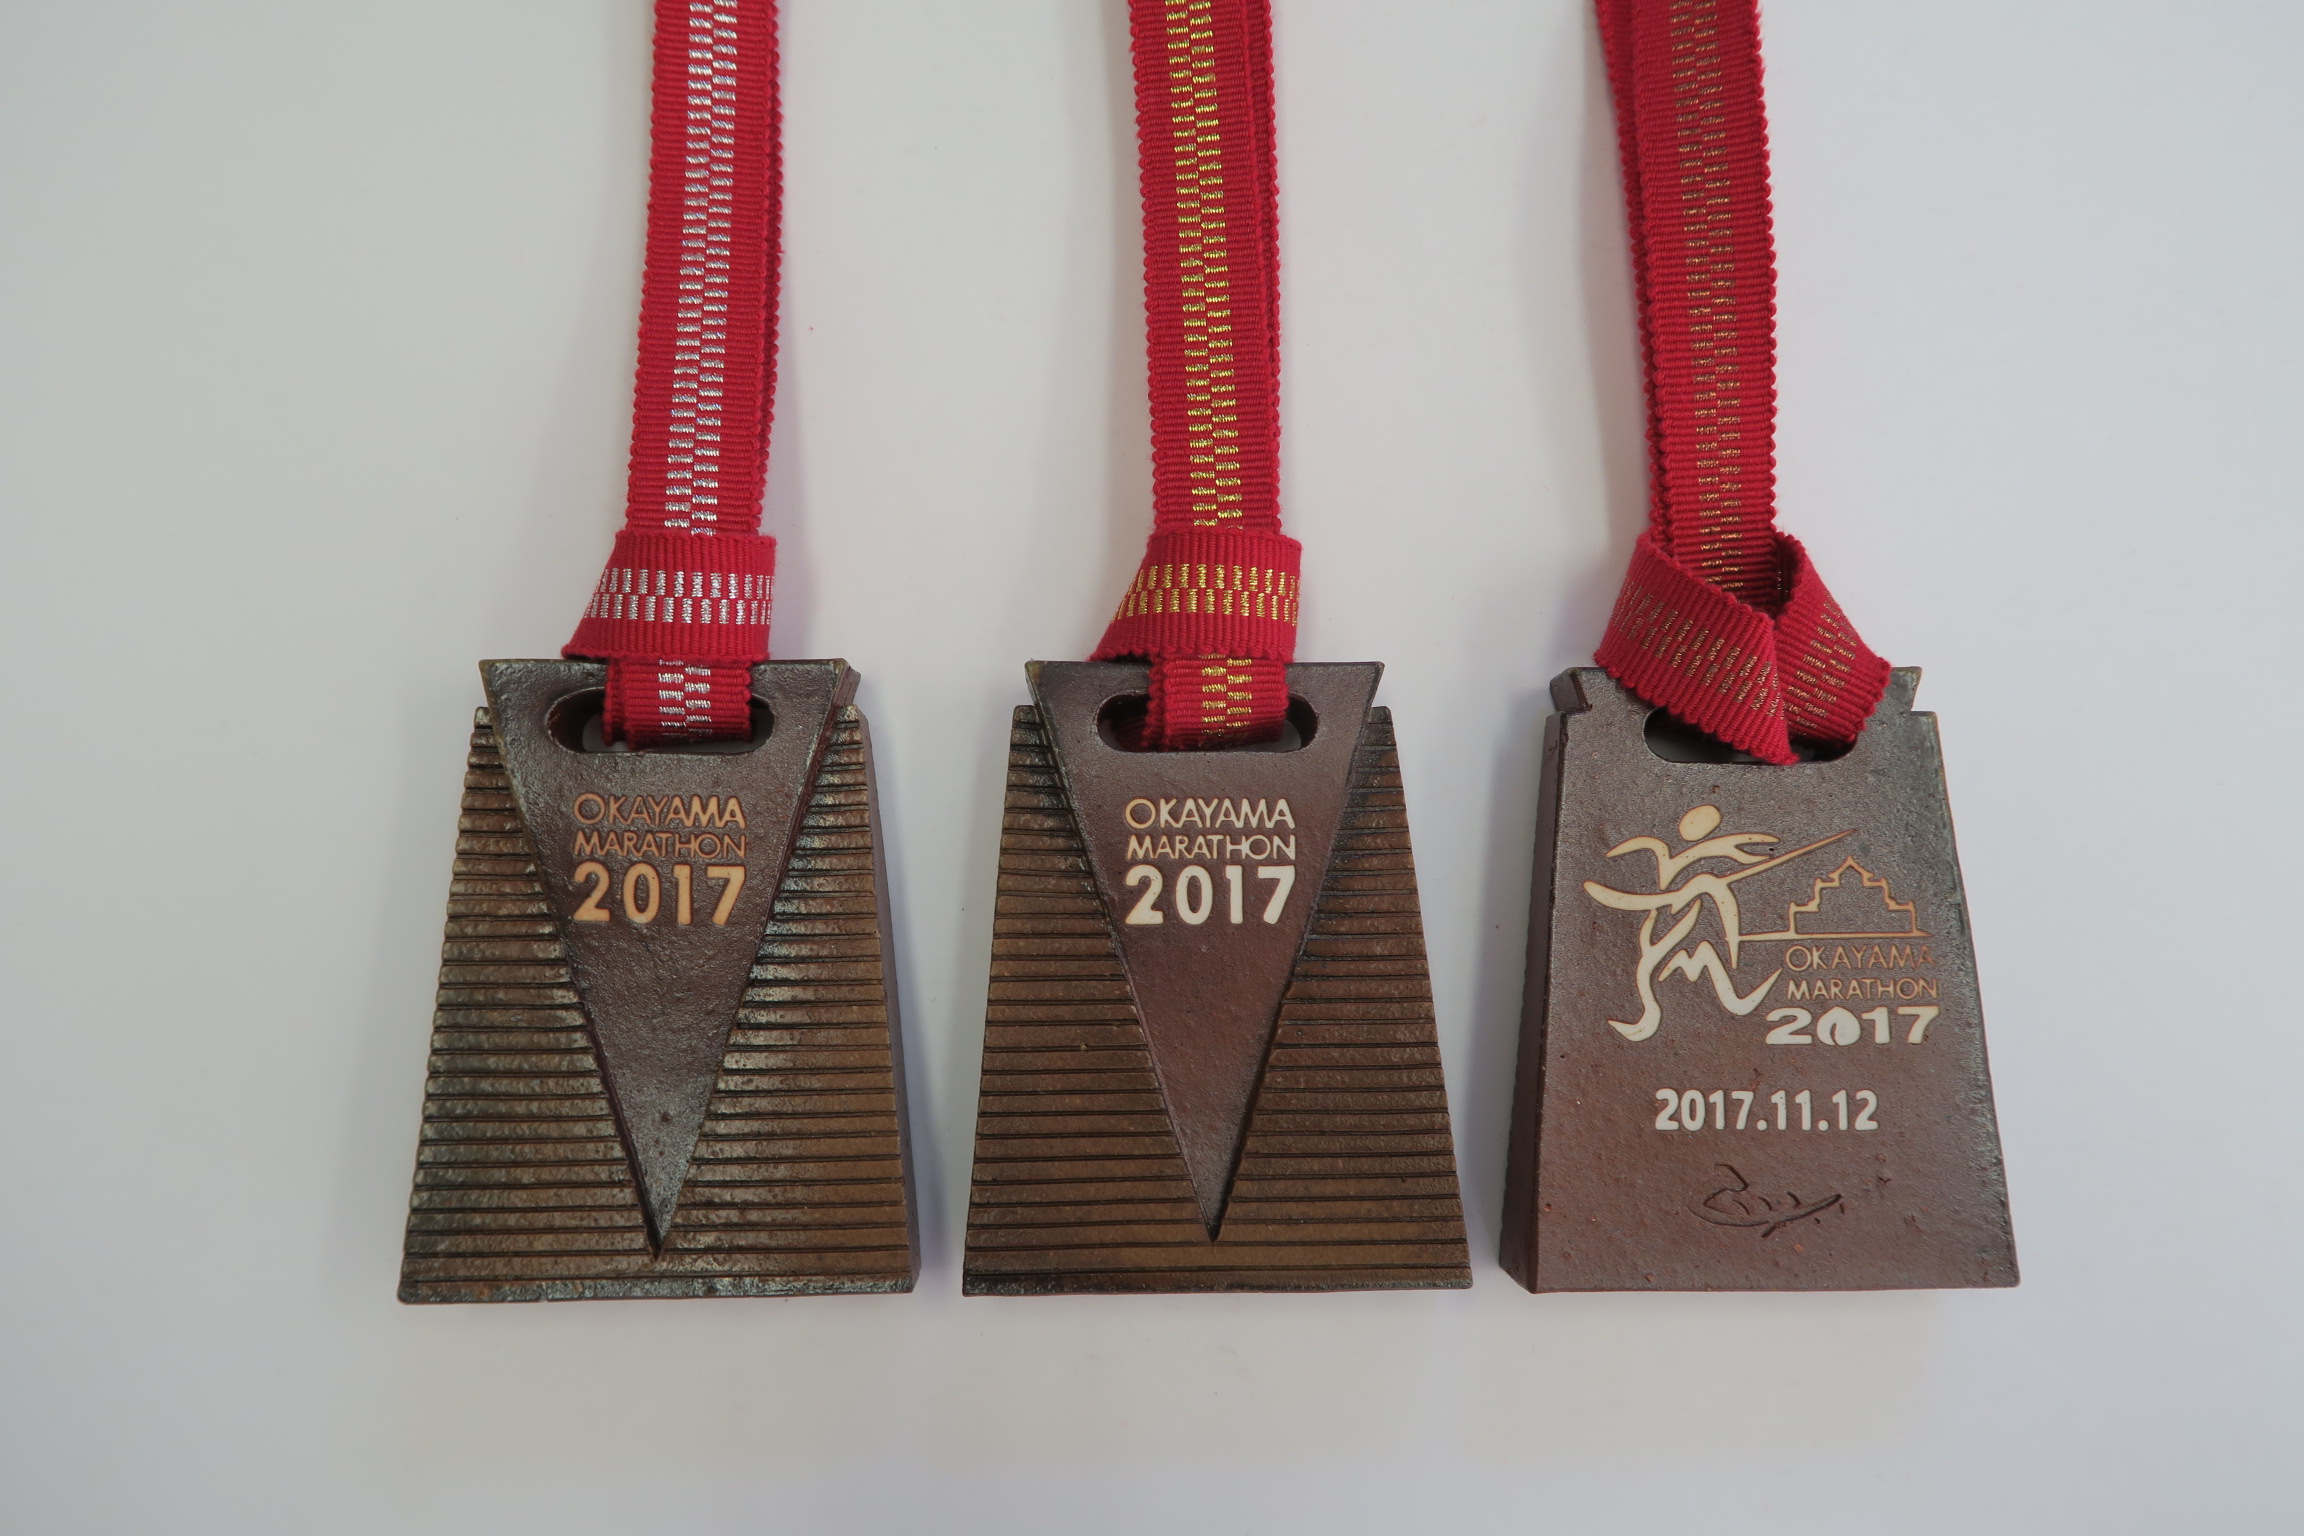 おかやまマラソン上位入賞者に備前焼メダルを贈呈 | おかやまマラソン2017